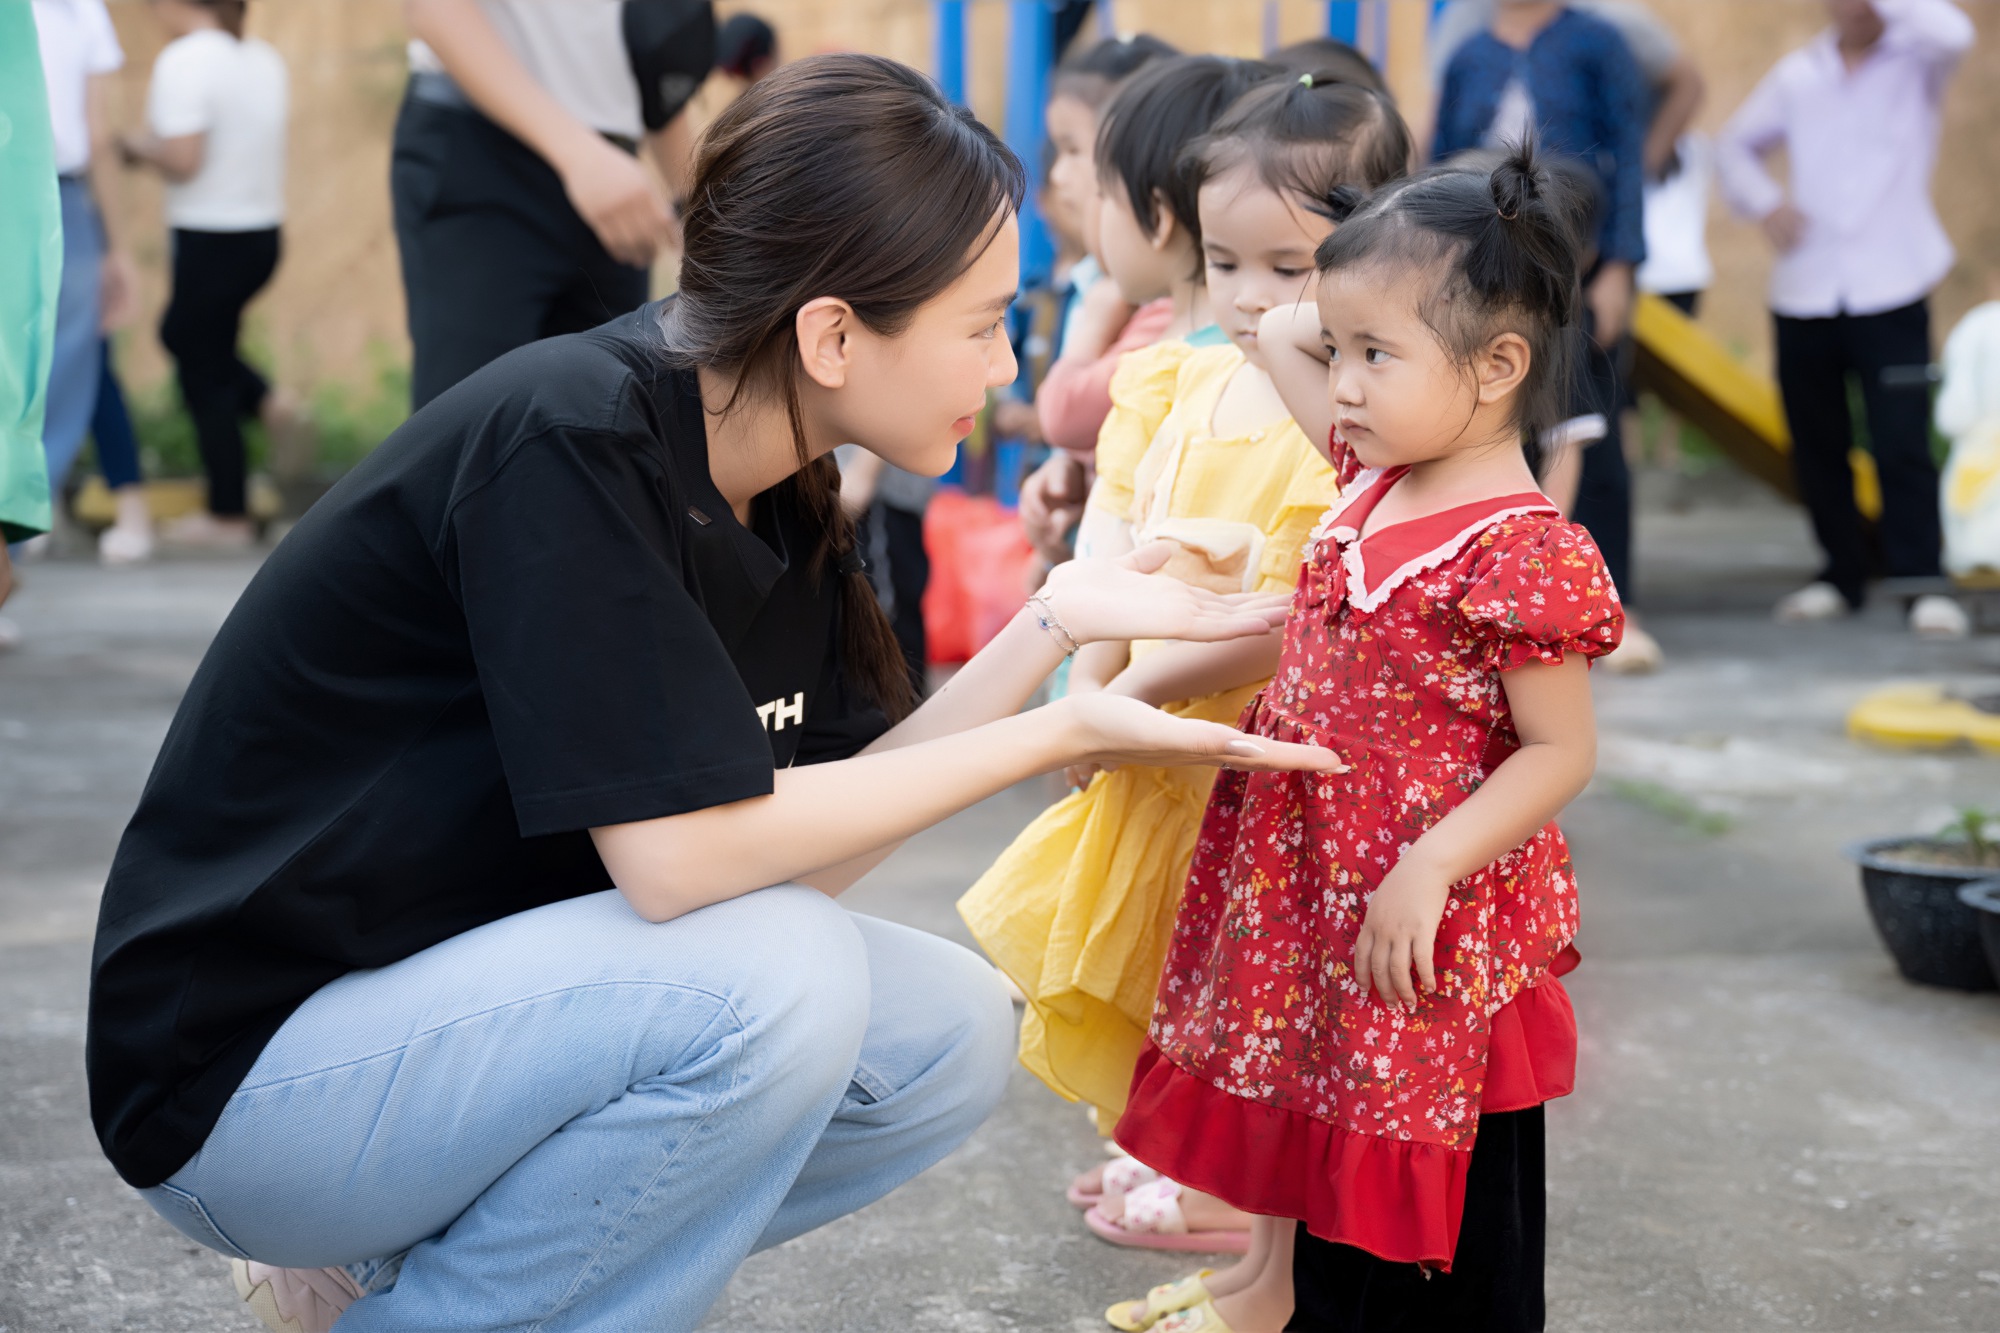 Hoa hậu Mai Phương đến thăm và tặng quà cho học sinh nghèo Bắc Kạn nhân dịp khai giảng - Ảnh 3.